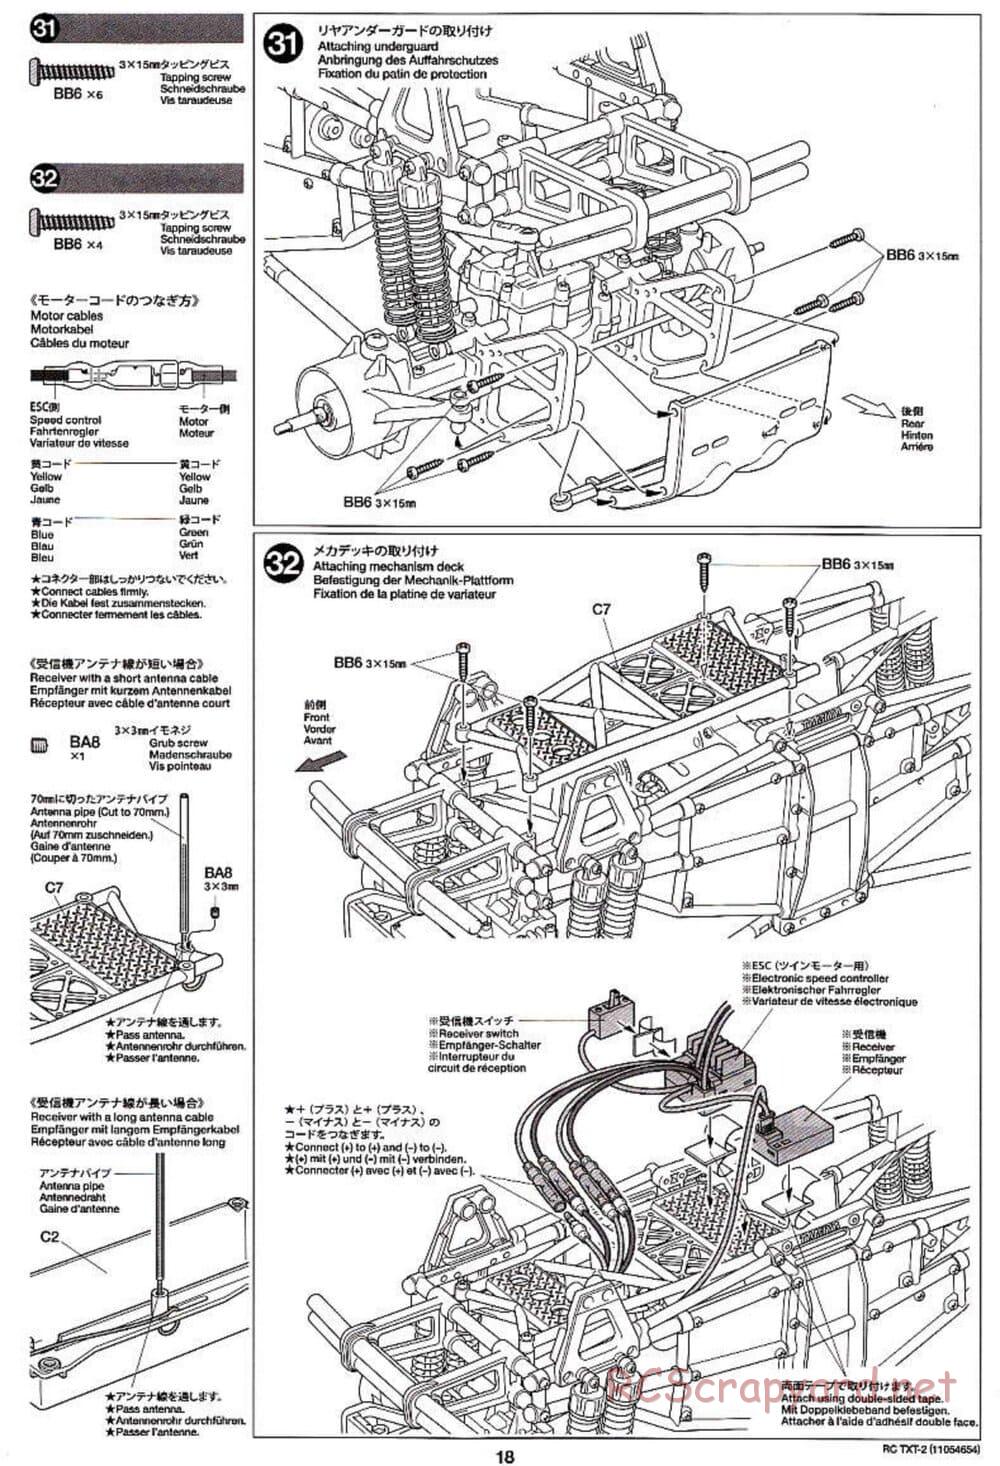 Tamiya - TXT-2 Chassis - Manual - Page 18